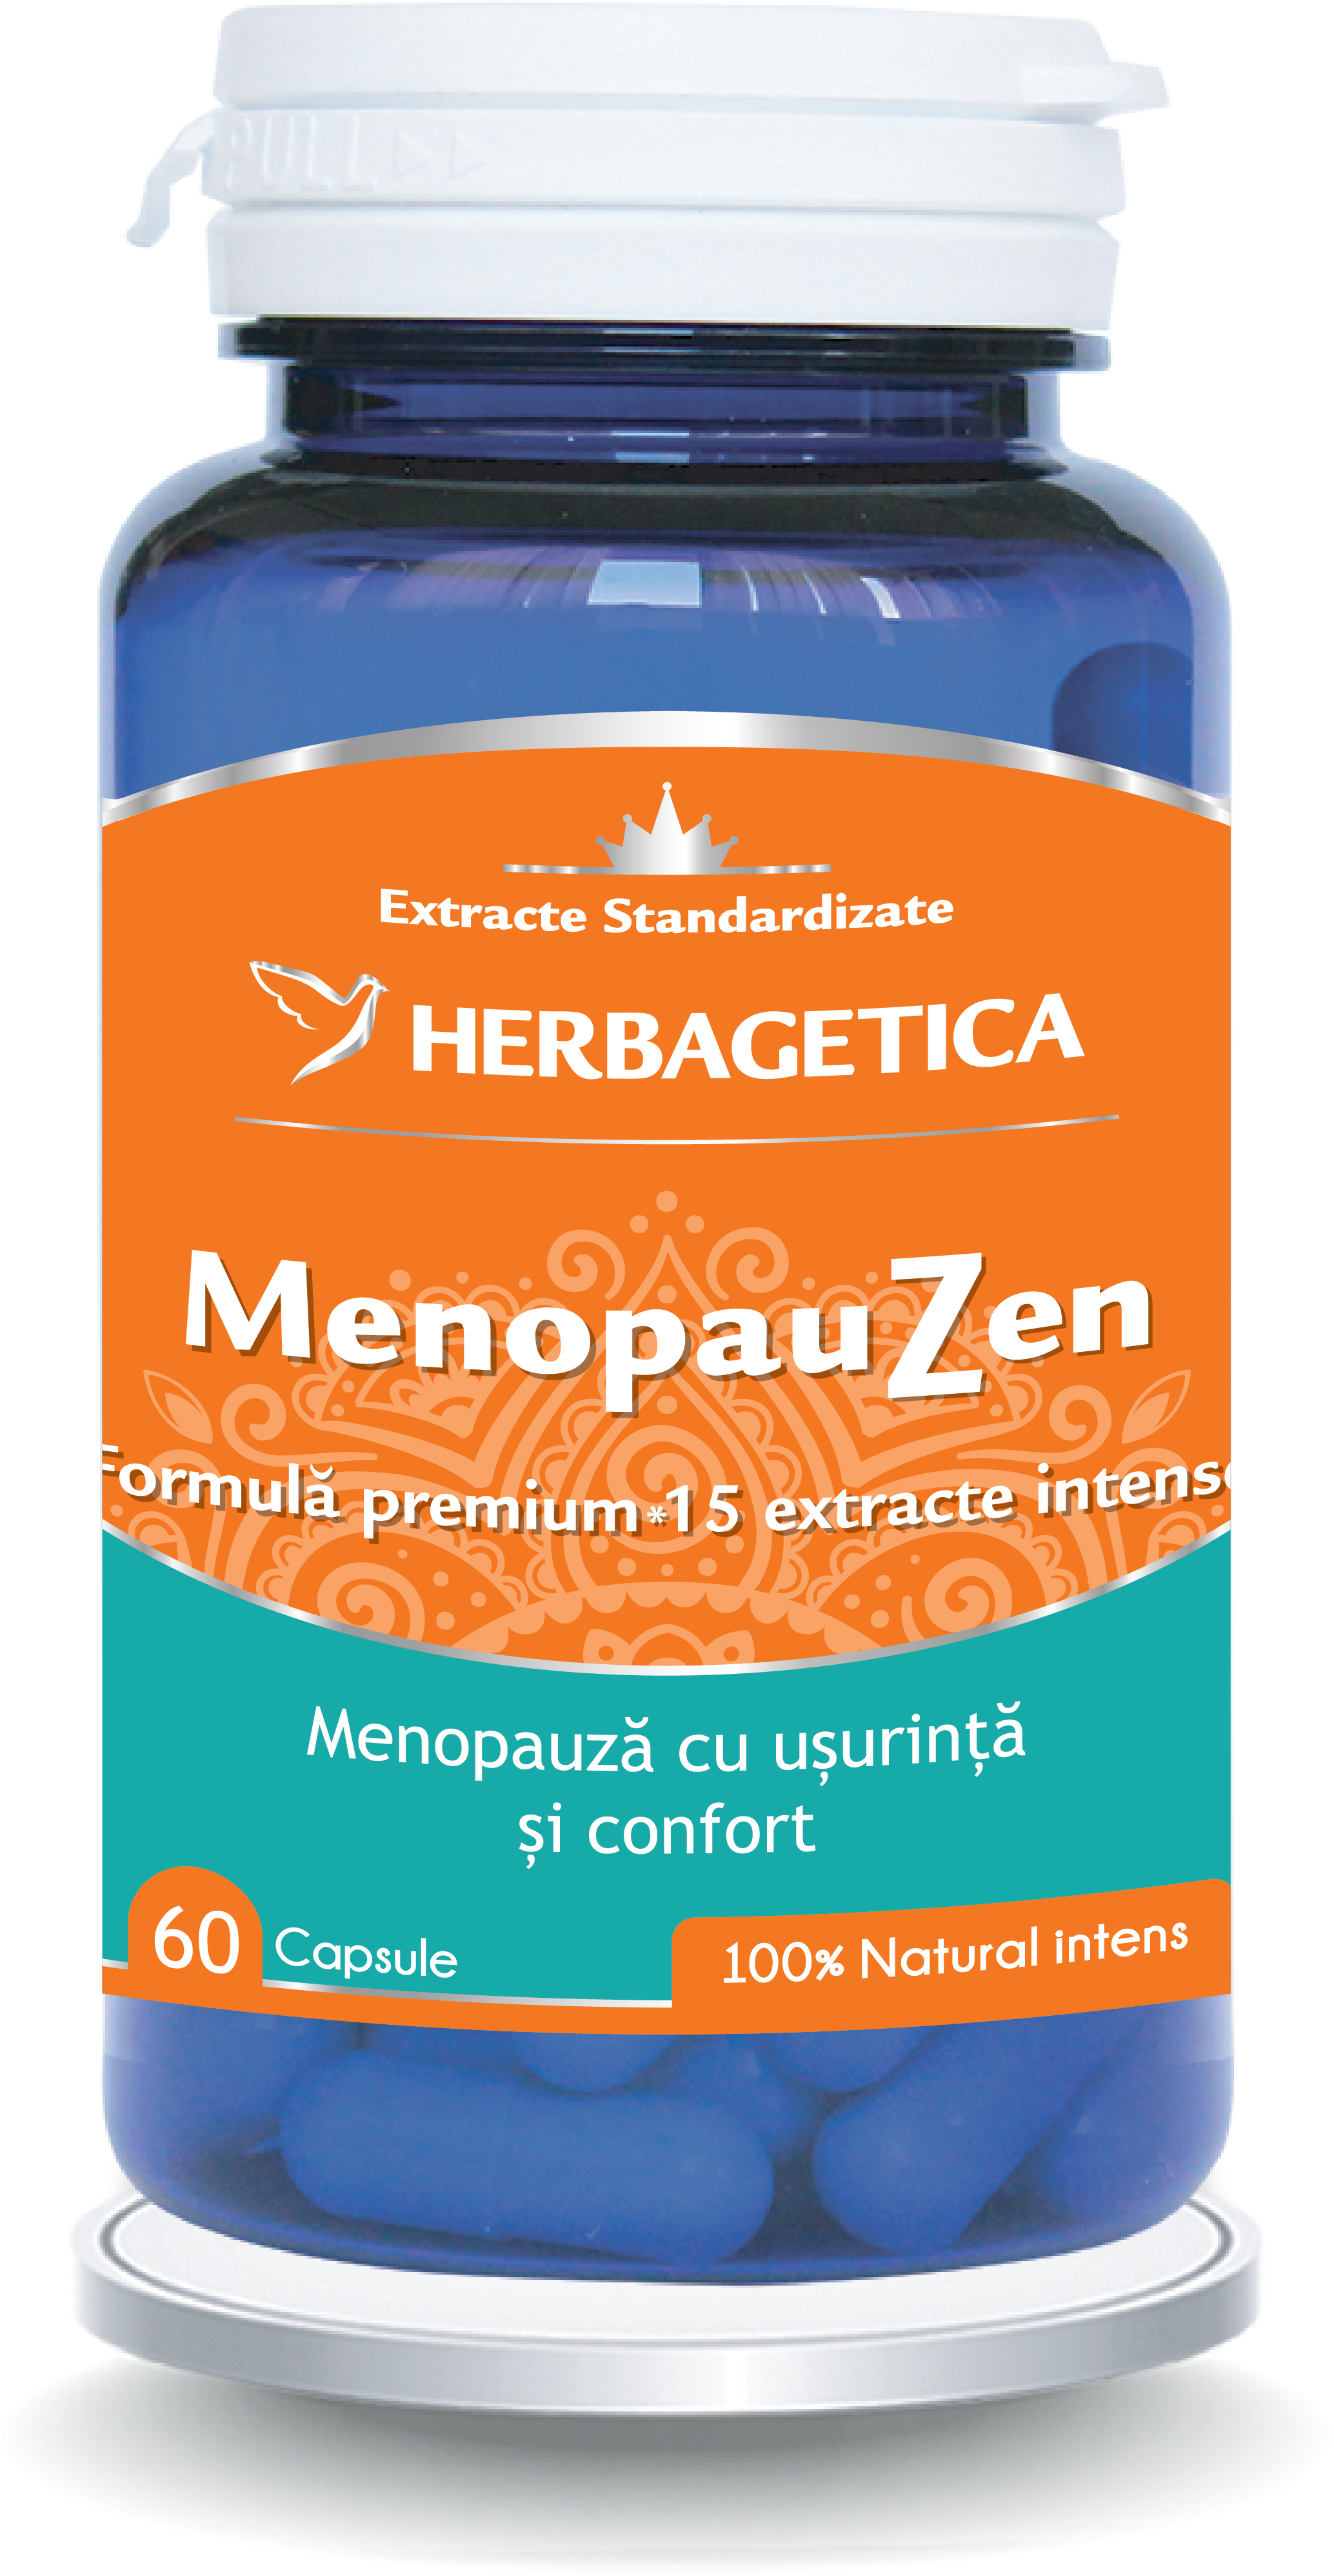 MenopauZen